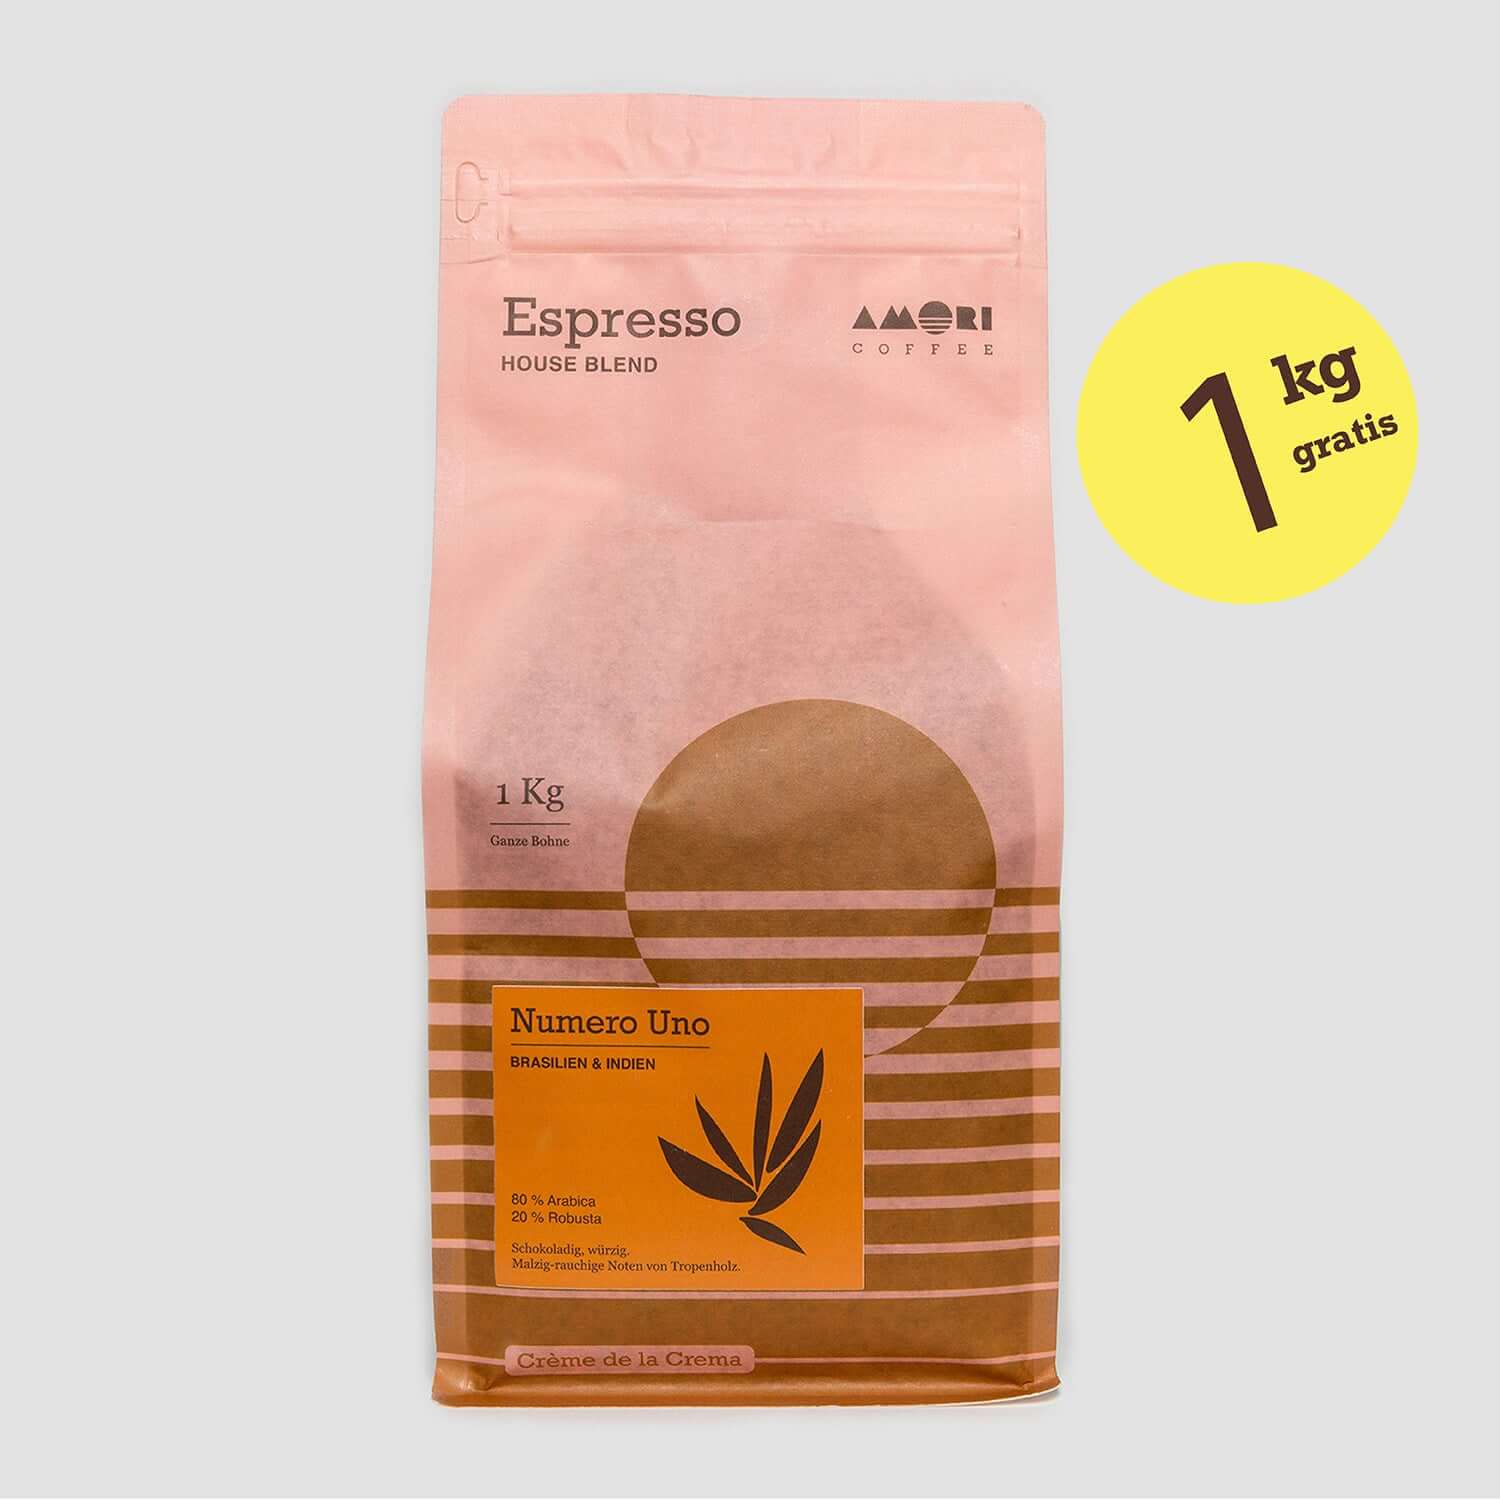 1 kg Espresso Numero Uno von AMORI gratis beim Kauf einer Ceado life.